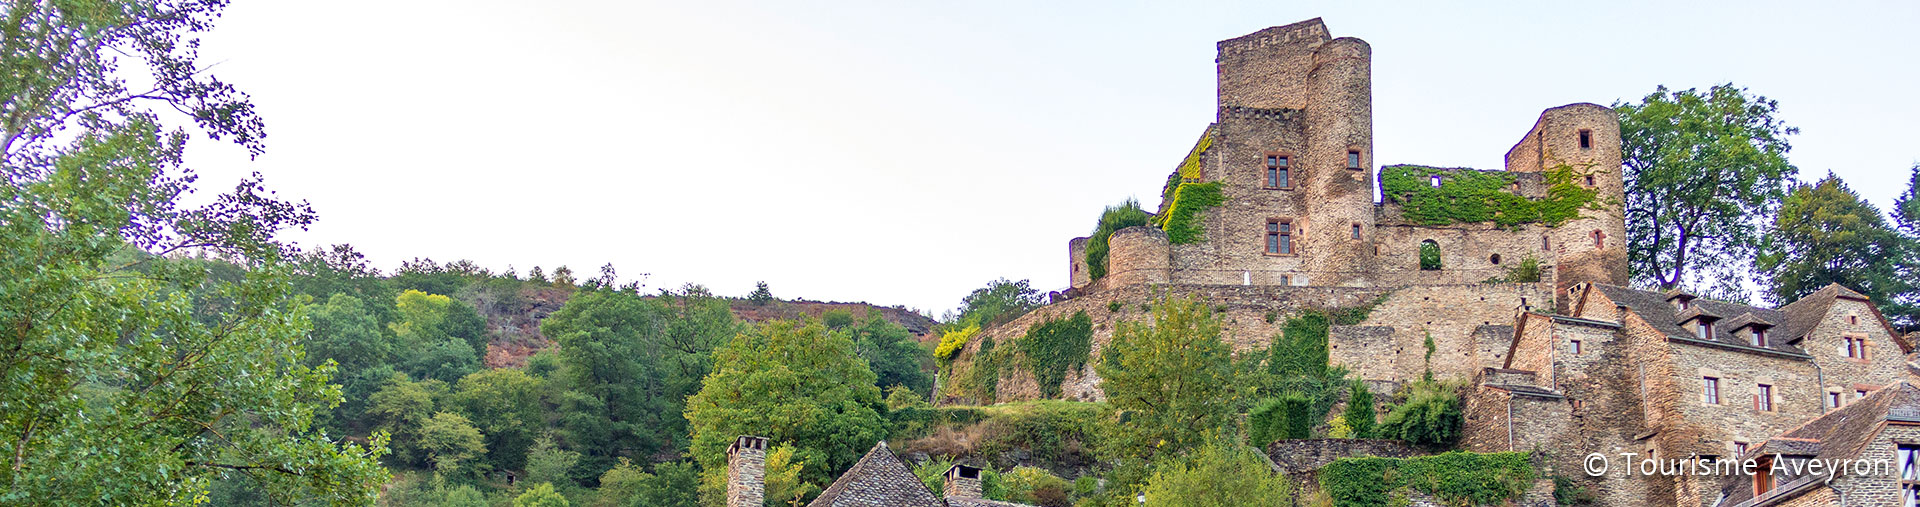 Séjour Culturel en Aveyron - Troisième image